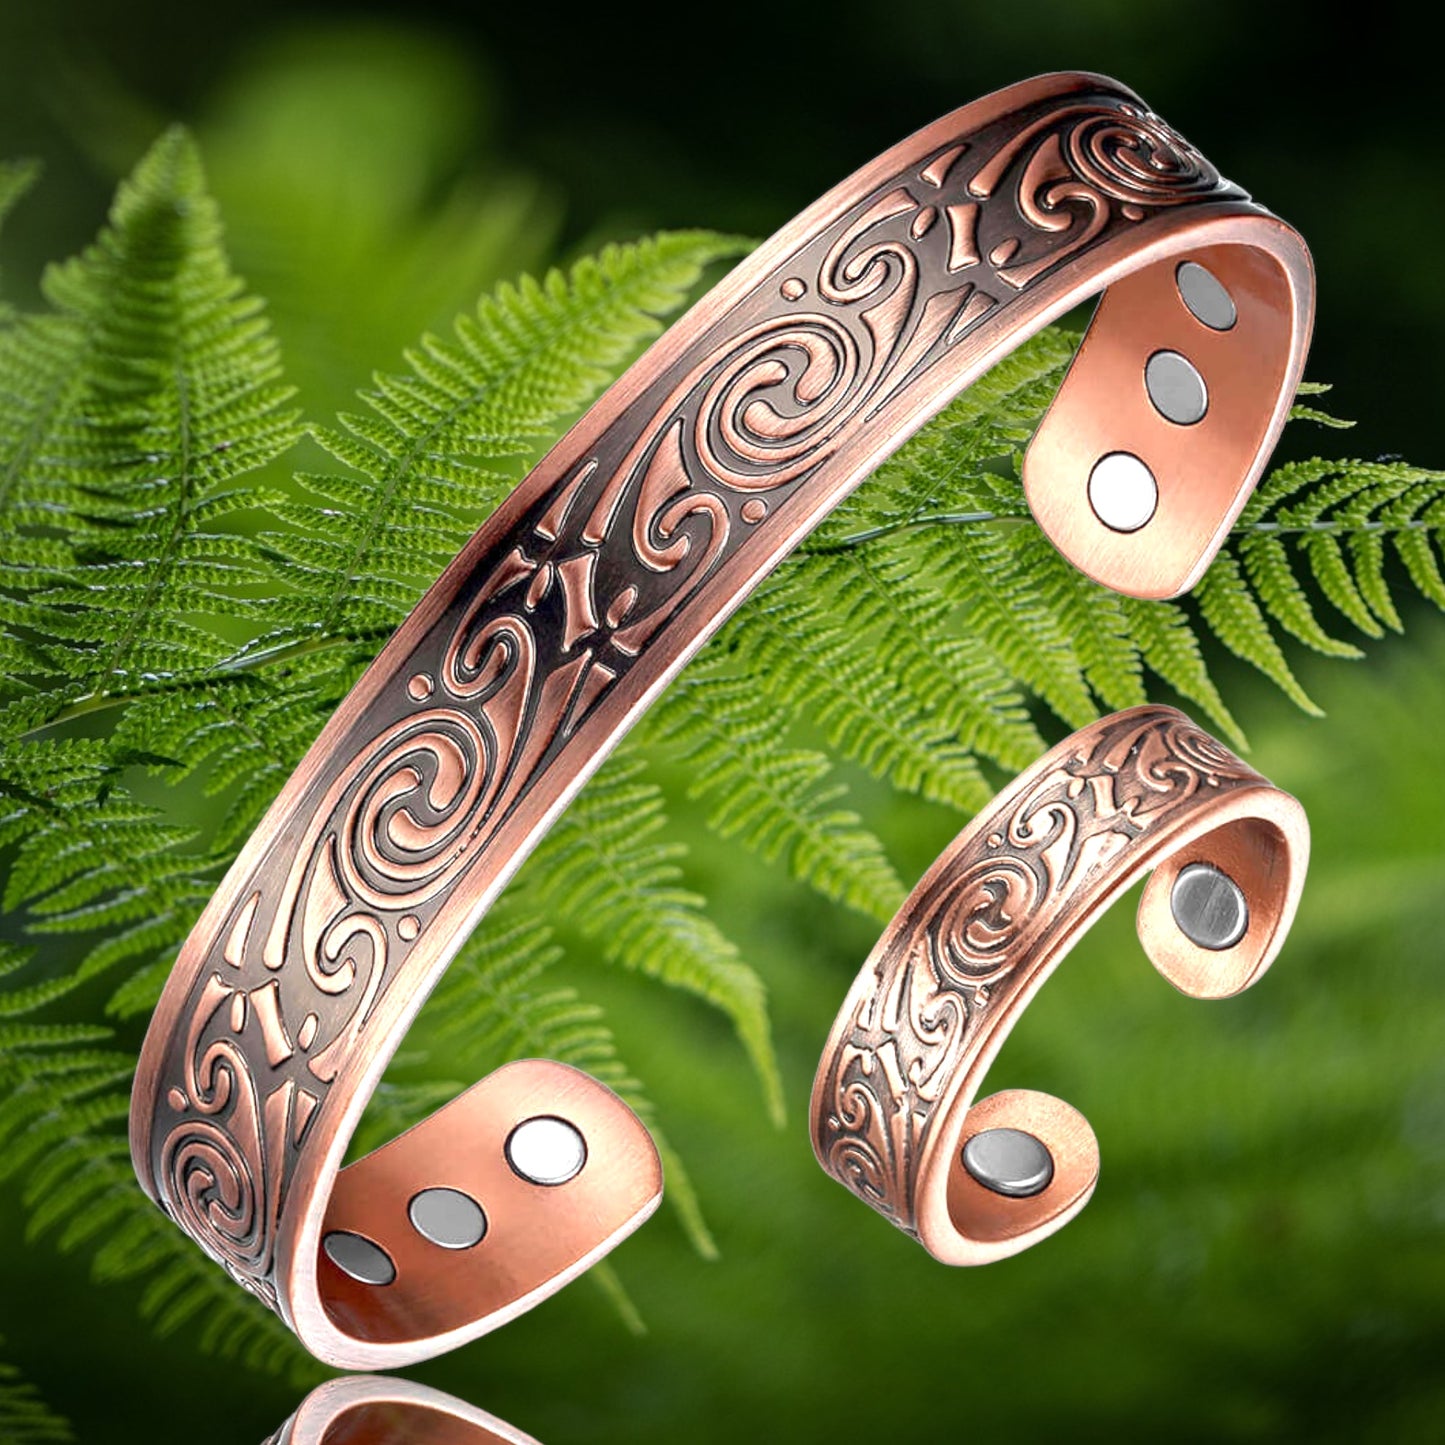 copper magnetic bracelet set